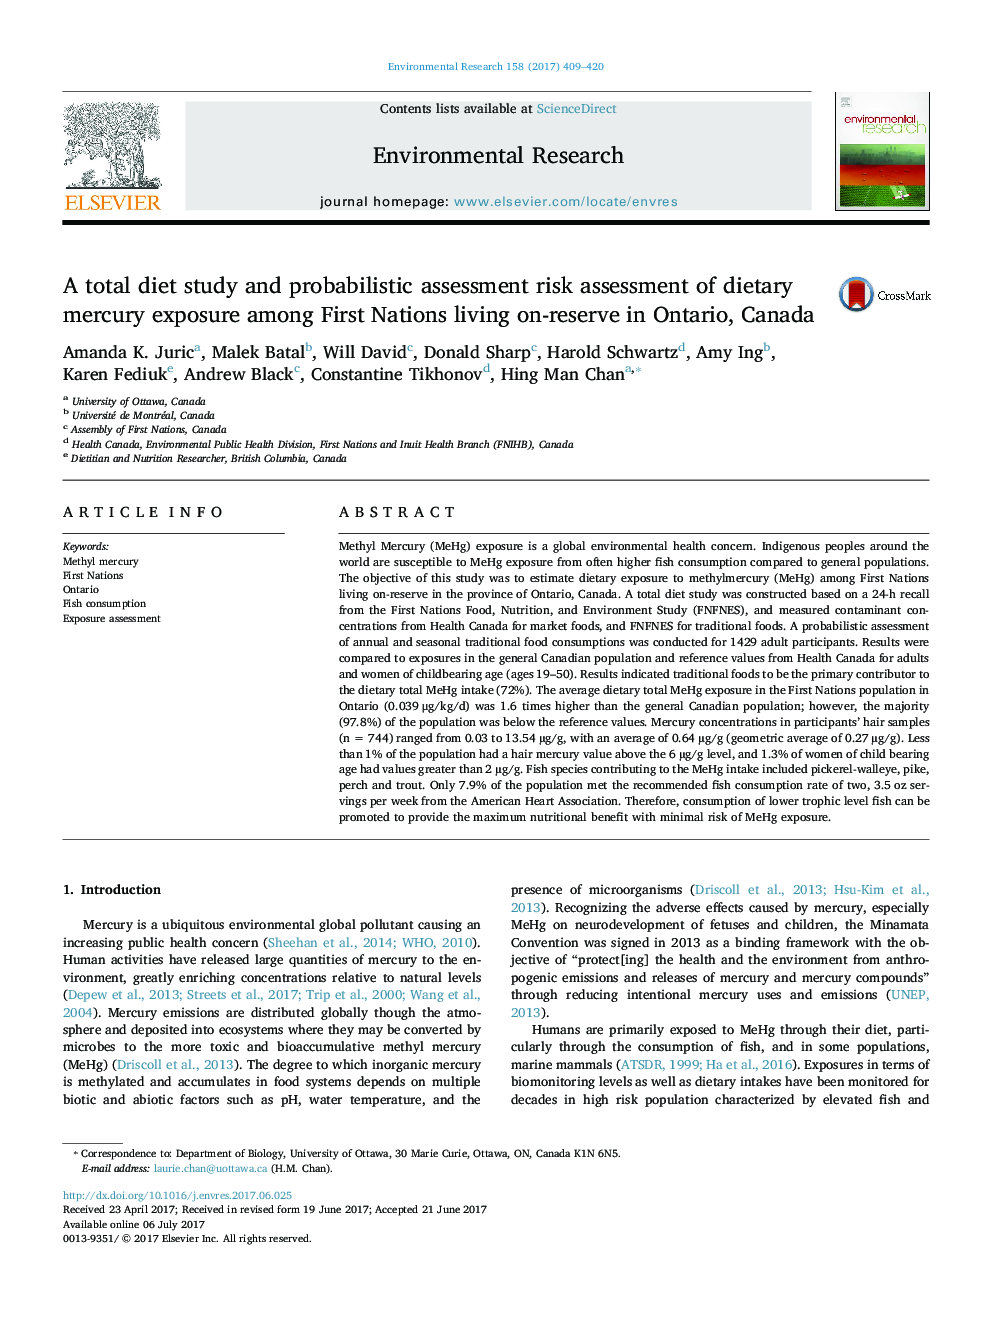 بررسی رژیم غذایی کل و ارزیابی احتمال احتمالی ریسک جیوه جیره غذایی در بین اقوام اولتیماتوم در منابع موجود در انتاریو، کانادا 